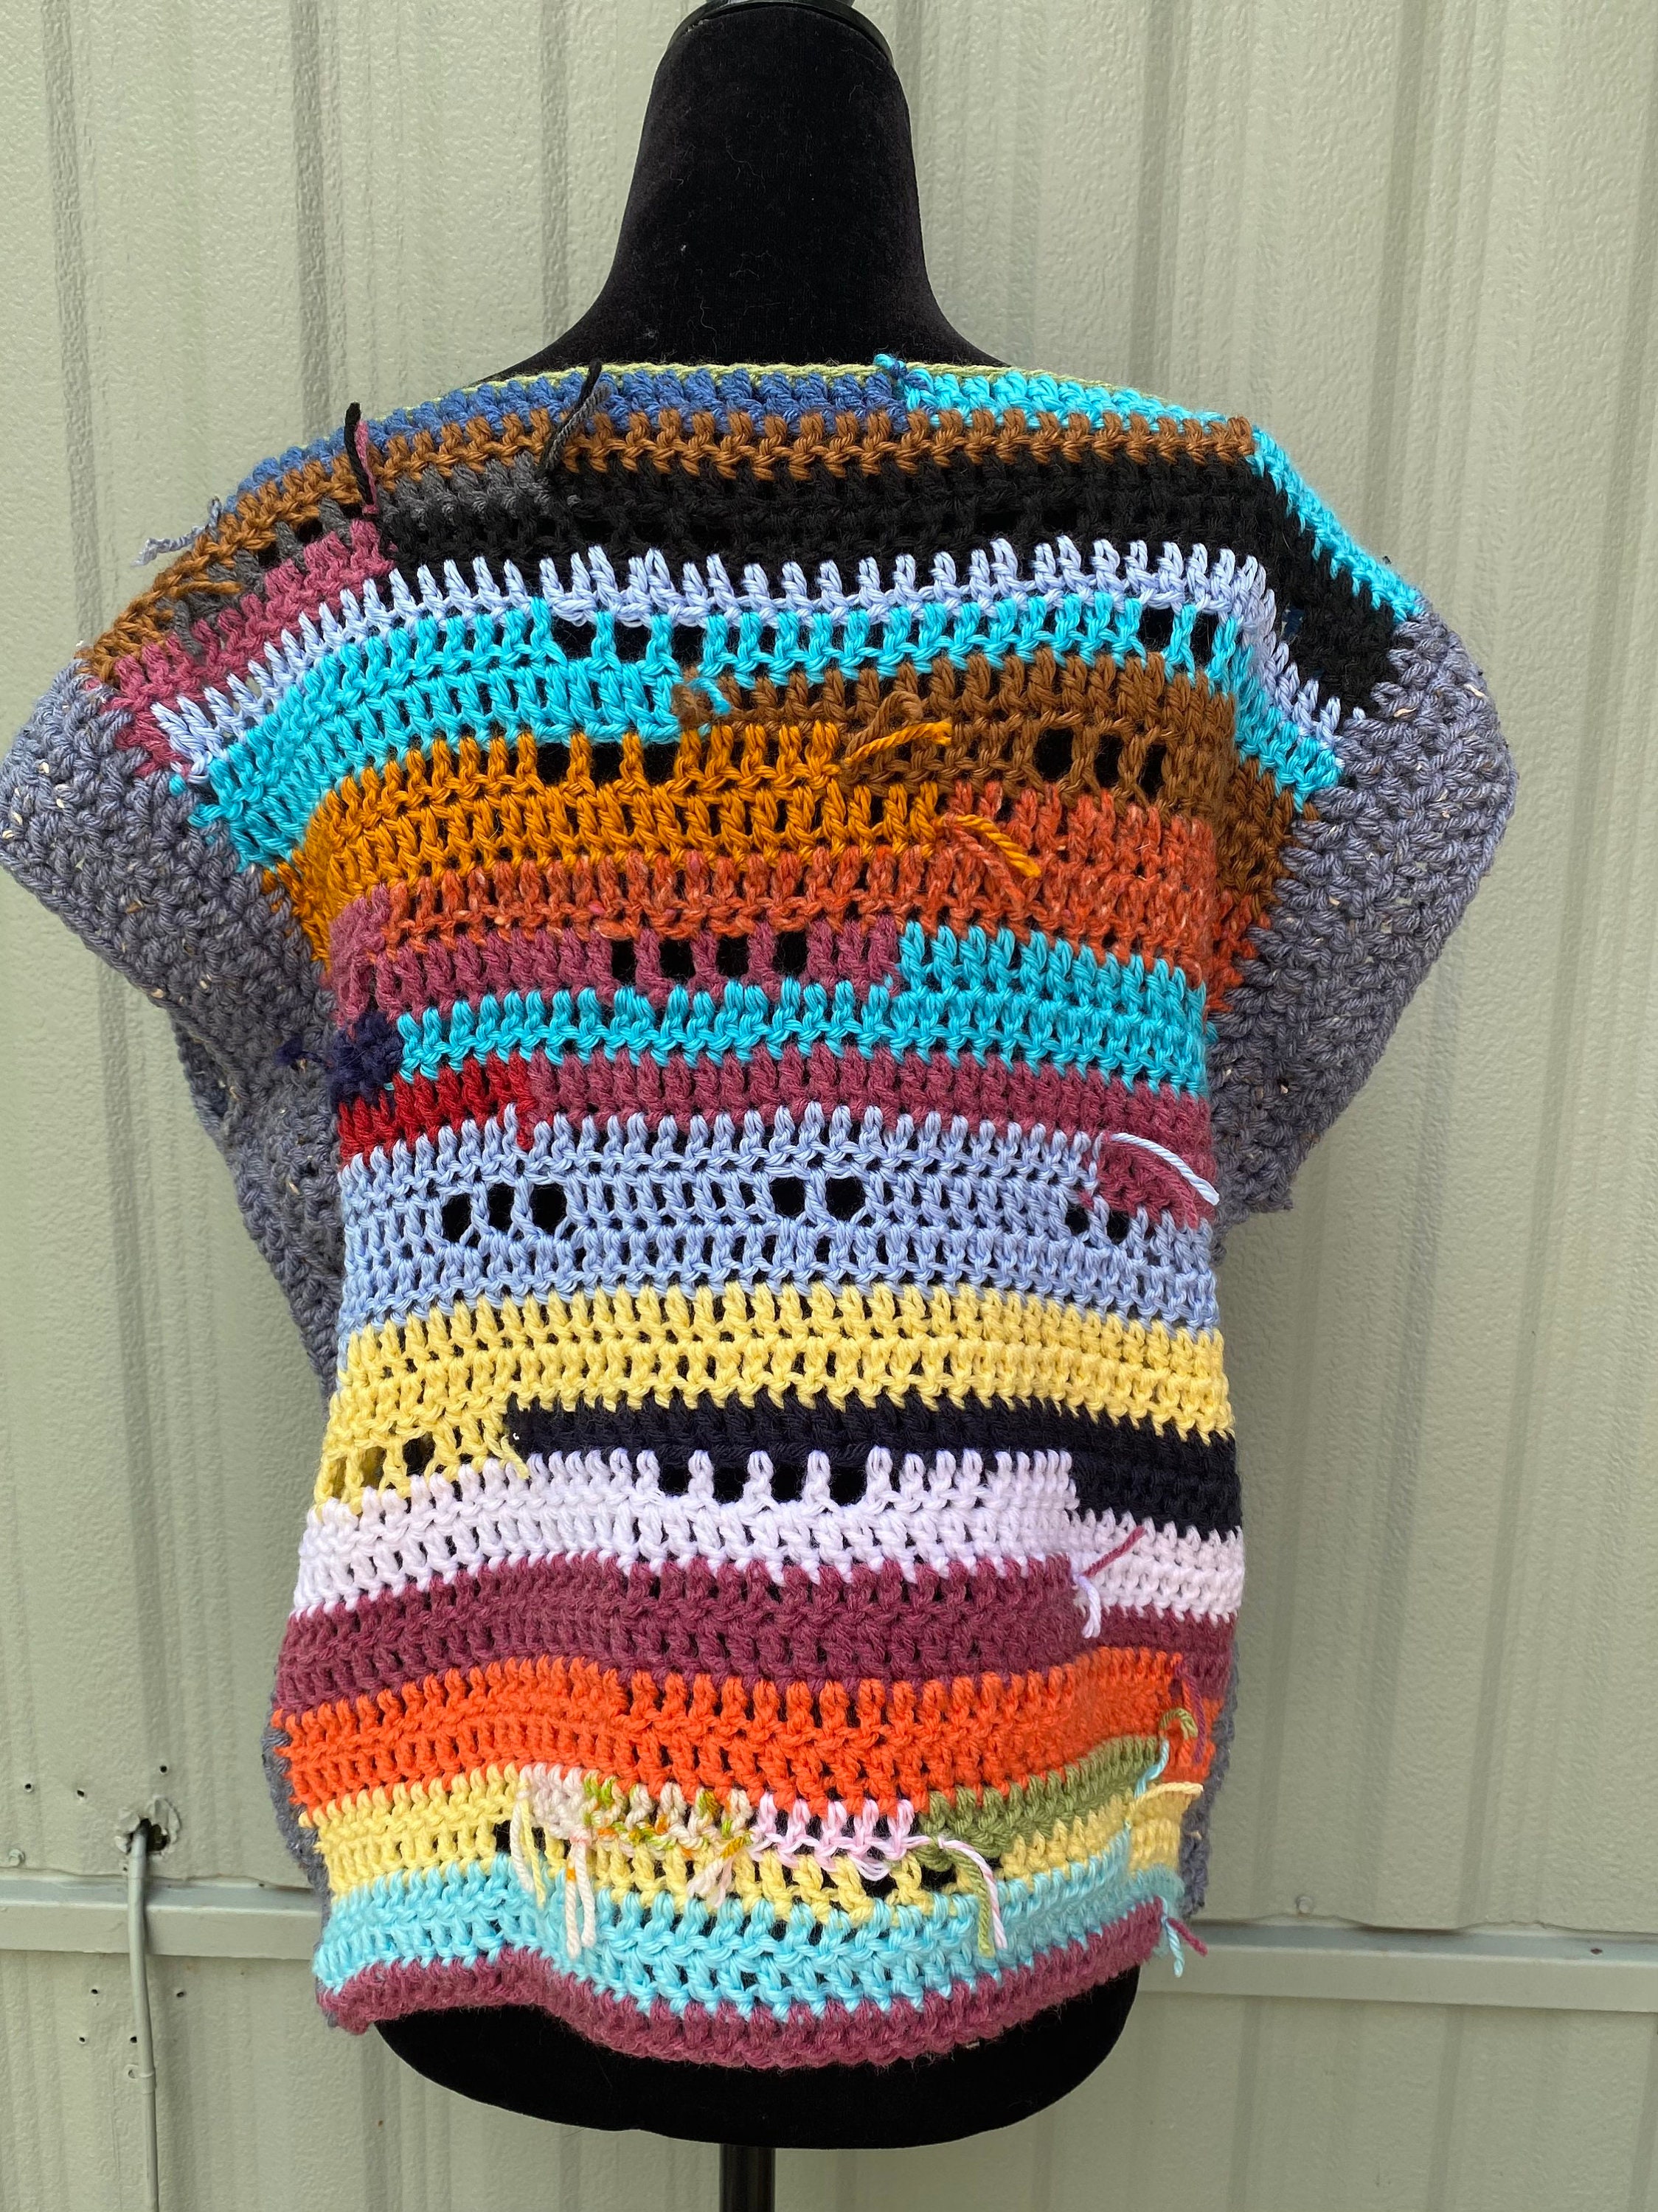 Yarn YARNART MELODY Yarn Blend Wool Multicolor Yarn Rainbow 